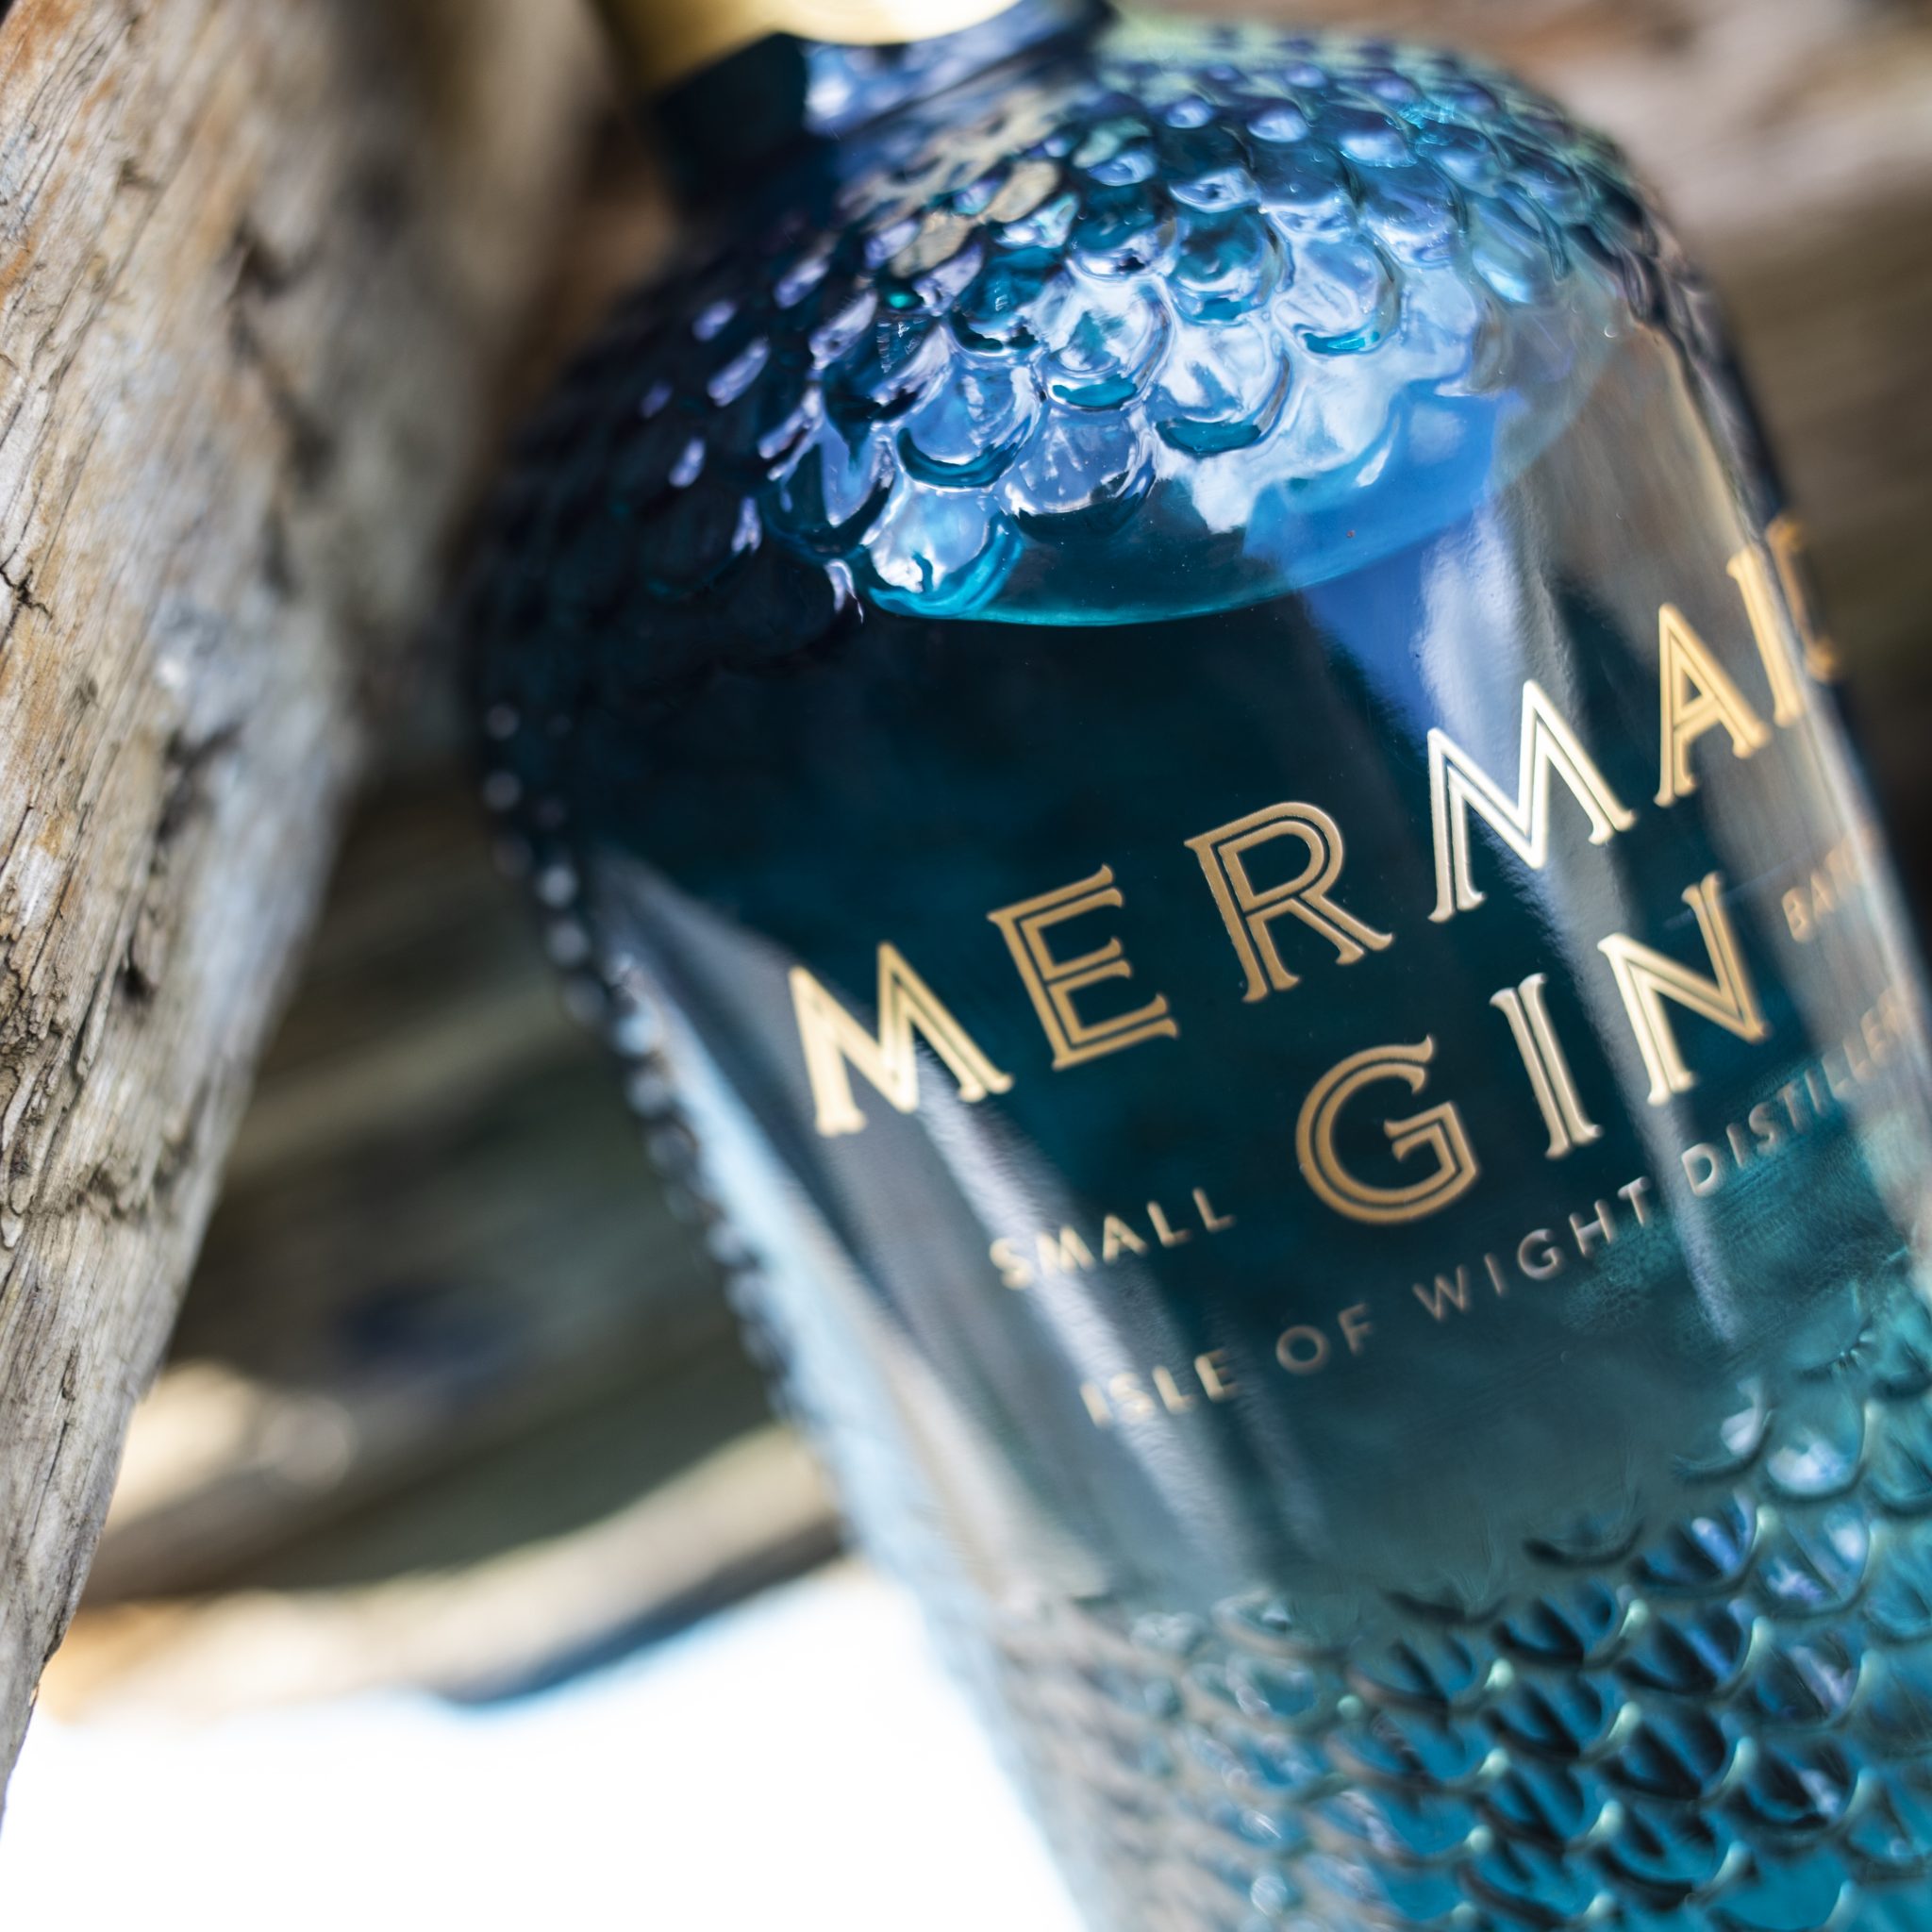 Mermaid Gin | All Things Drinks